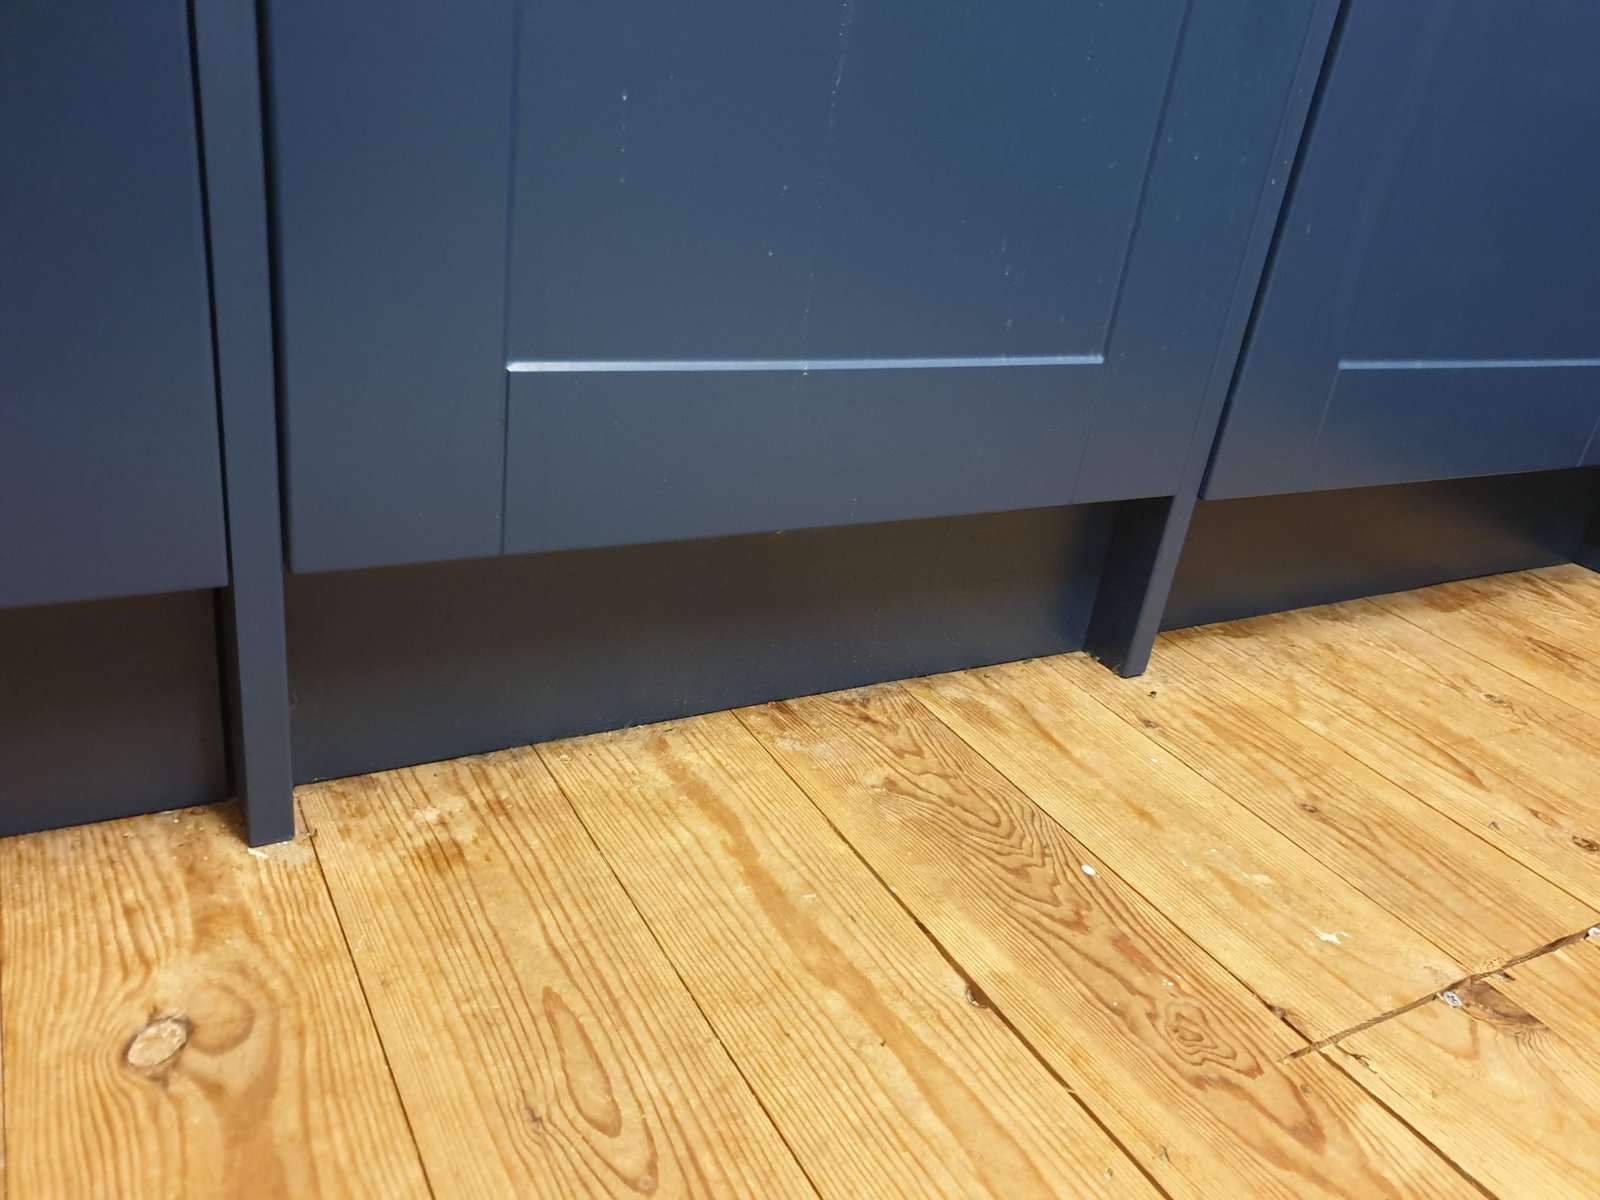 Laminate Under Kitchen Units Diynot, Laying Laminate Floor Under Kitchen Cabinets